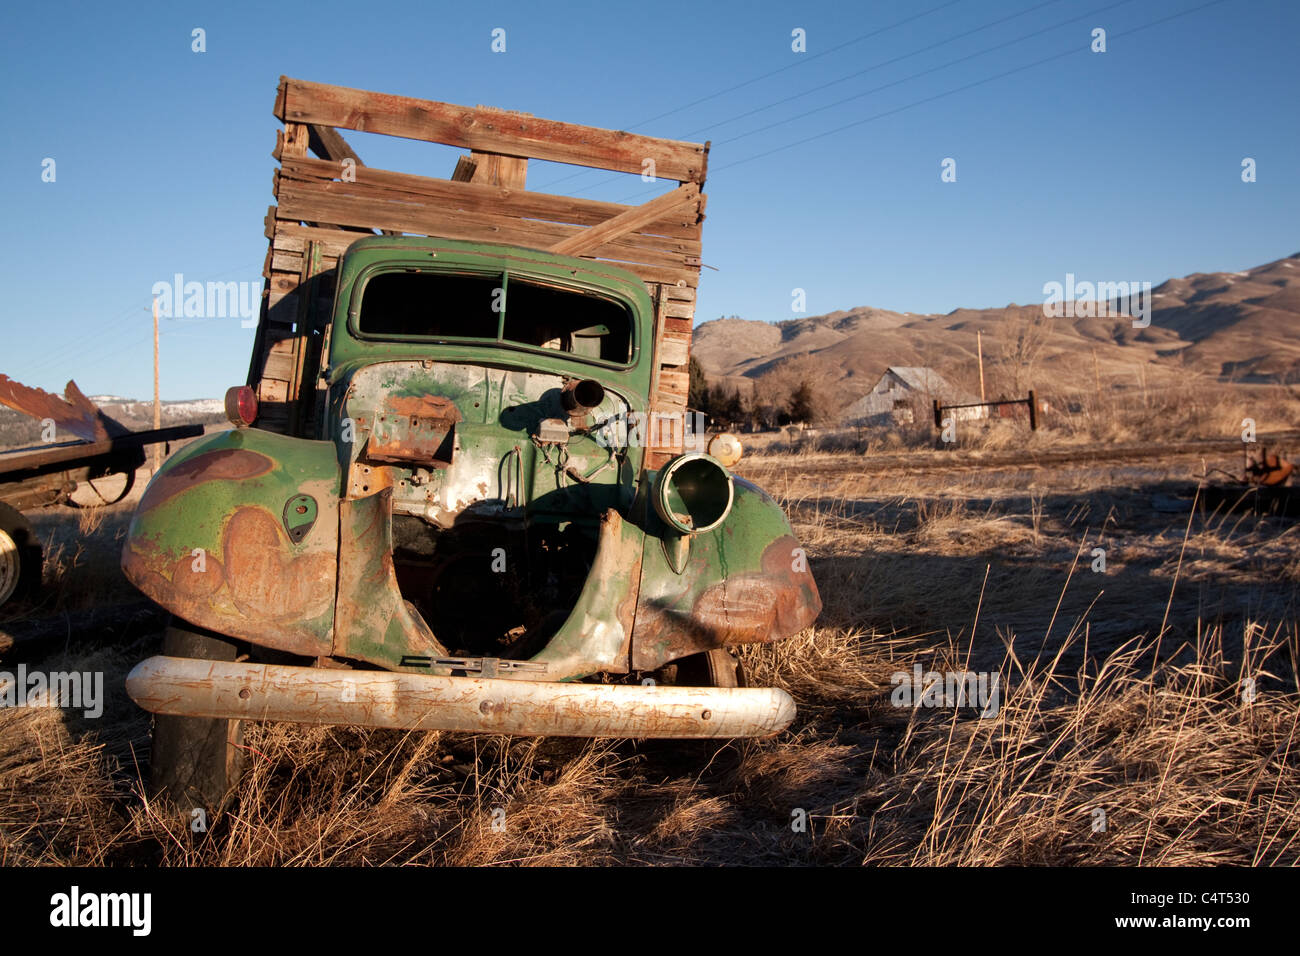 Un vieux camion de livraison van vintage abandonnés dans un champ Banque D'Images